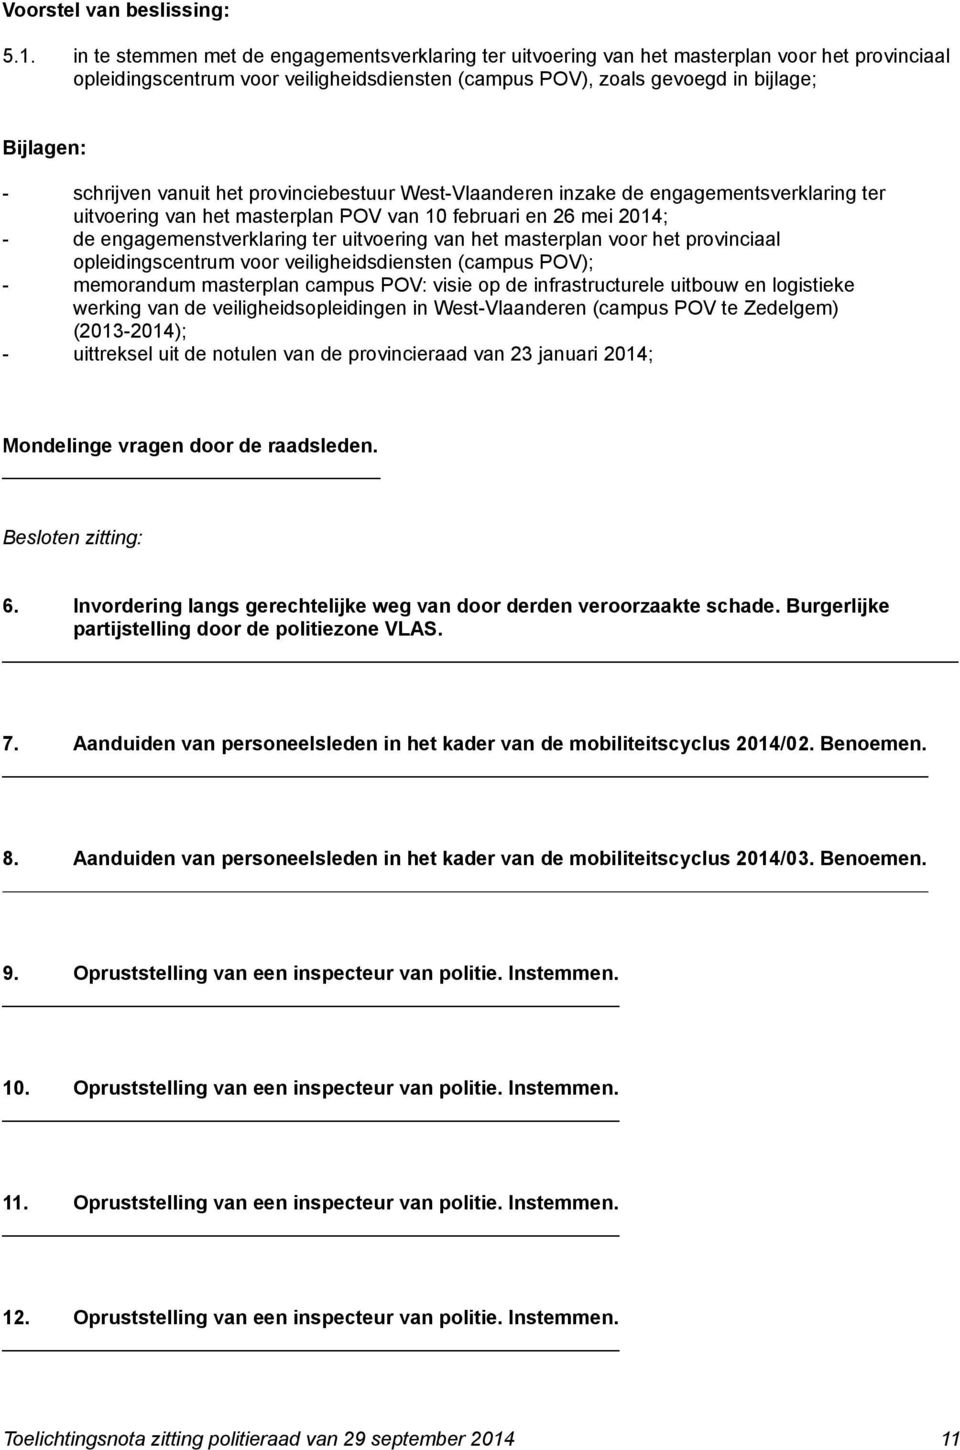 schrijven vanuit het provinciebestuur West-Vlaanderen inzake de engagementsverklaring ter uitvoering van het masterplan POV van 10 februari en 26 mei 2014; - de engagemenstverklaring ter uitvoering